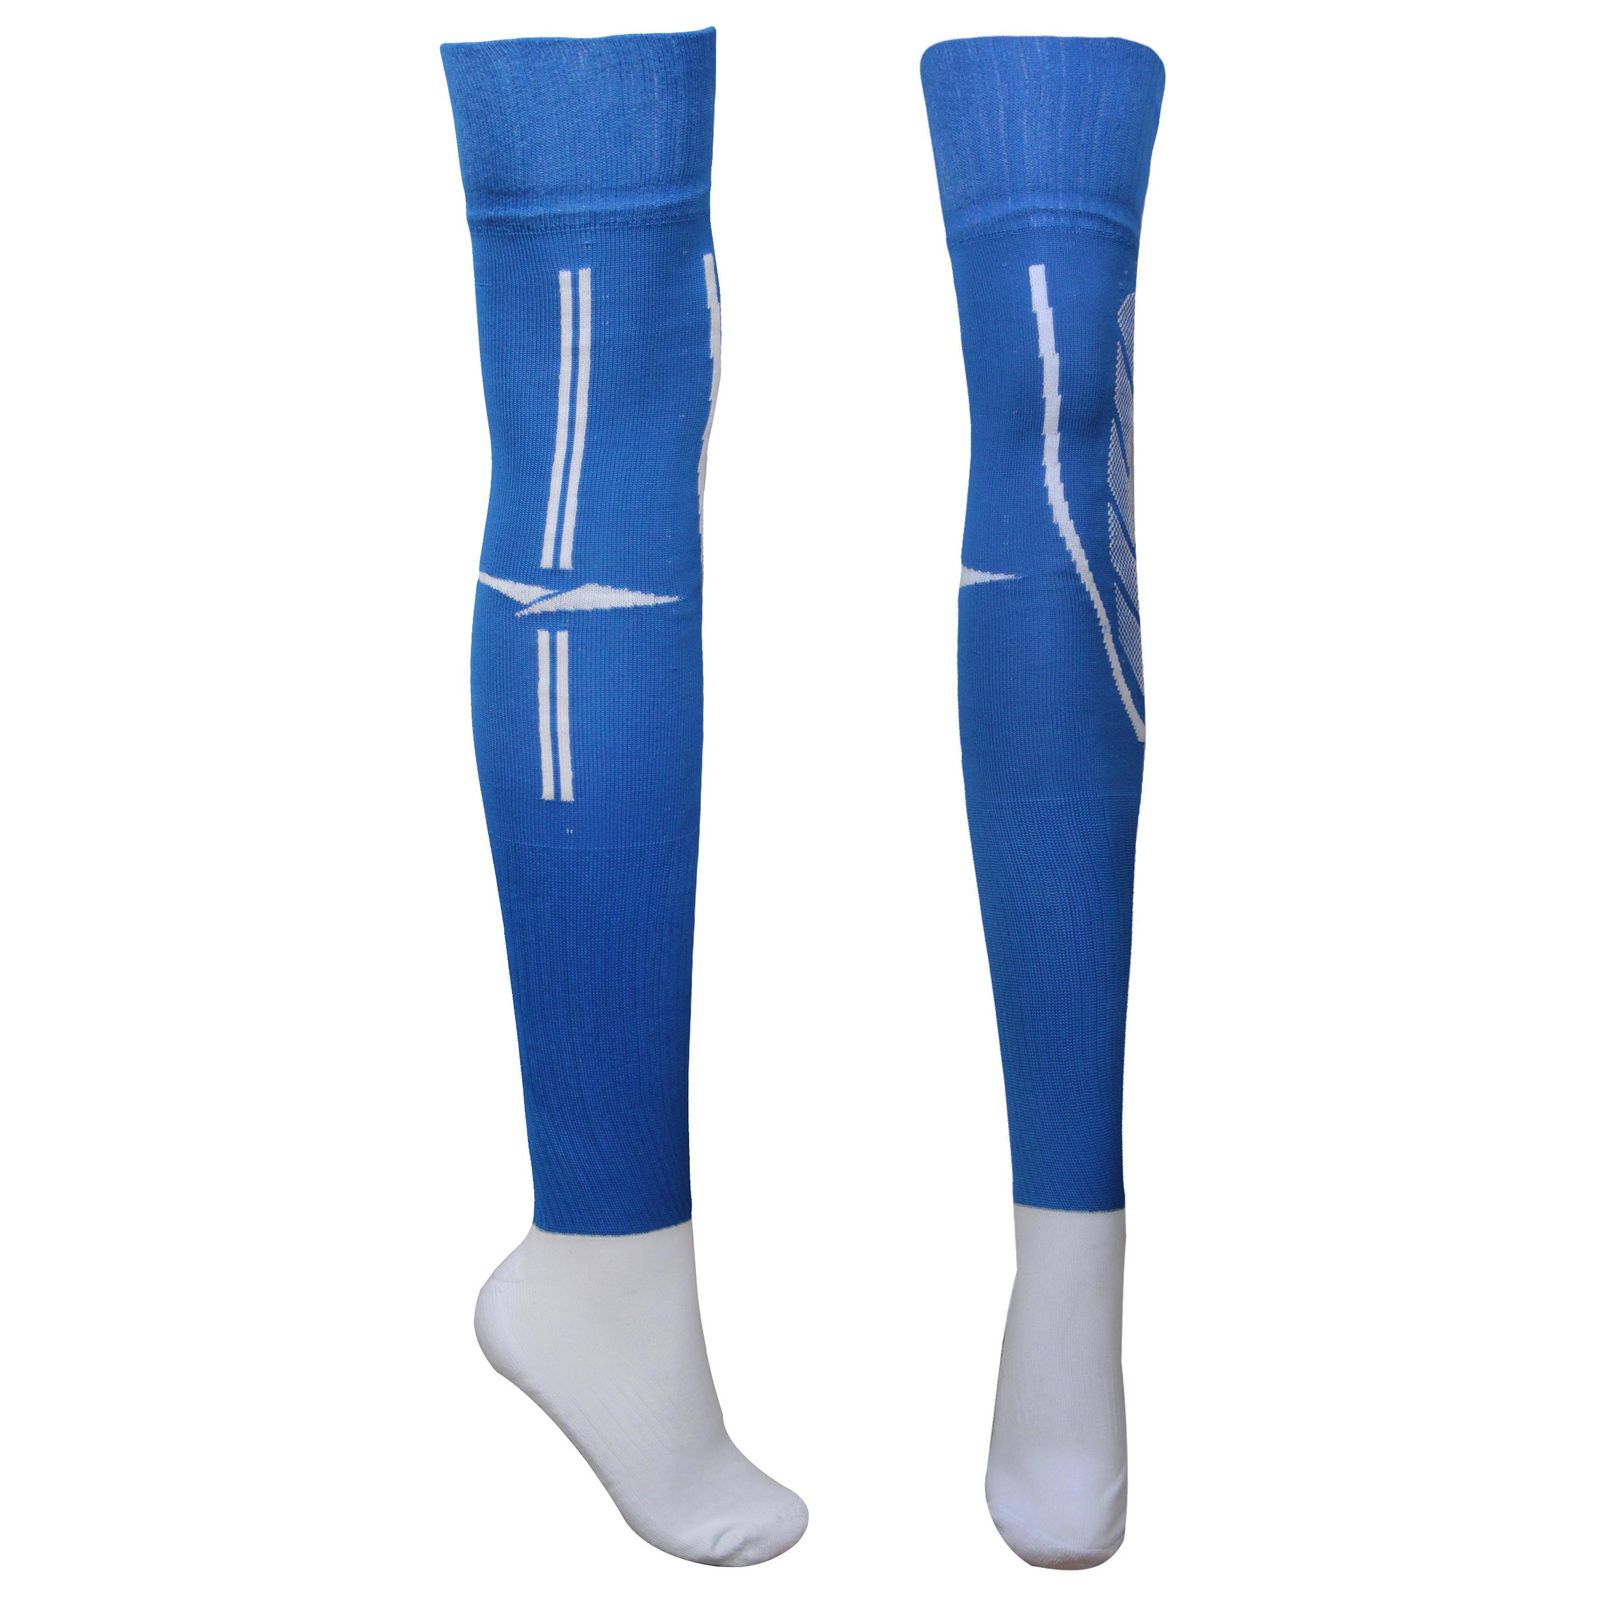 جوراب ورزشی ساق بلند مردانه ماییلدا مدل کف حوله ای کد 4187 رنگ آبی